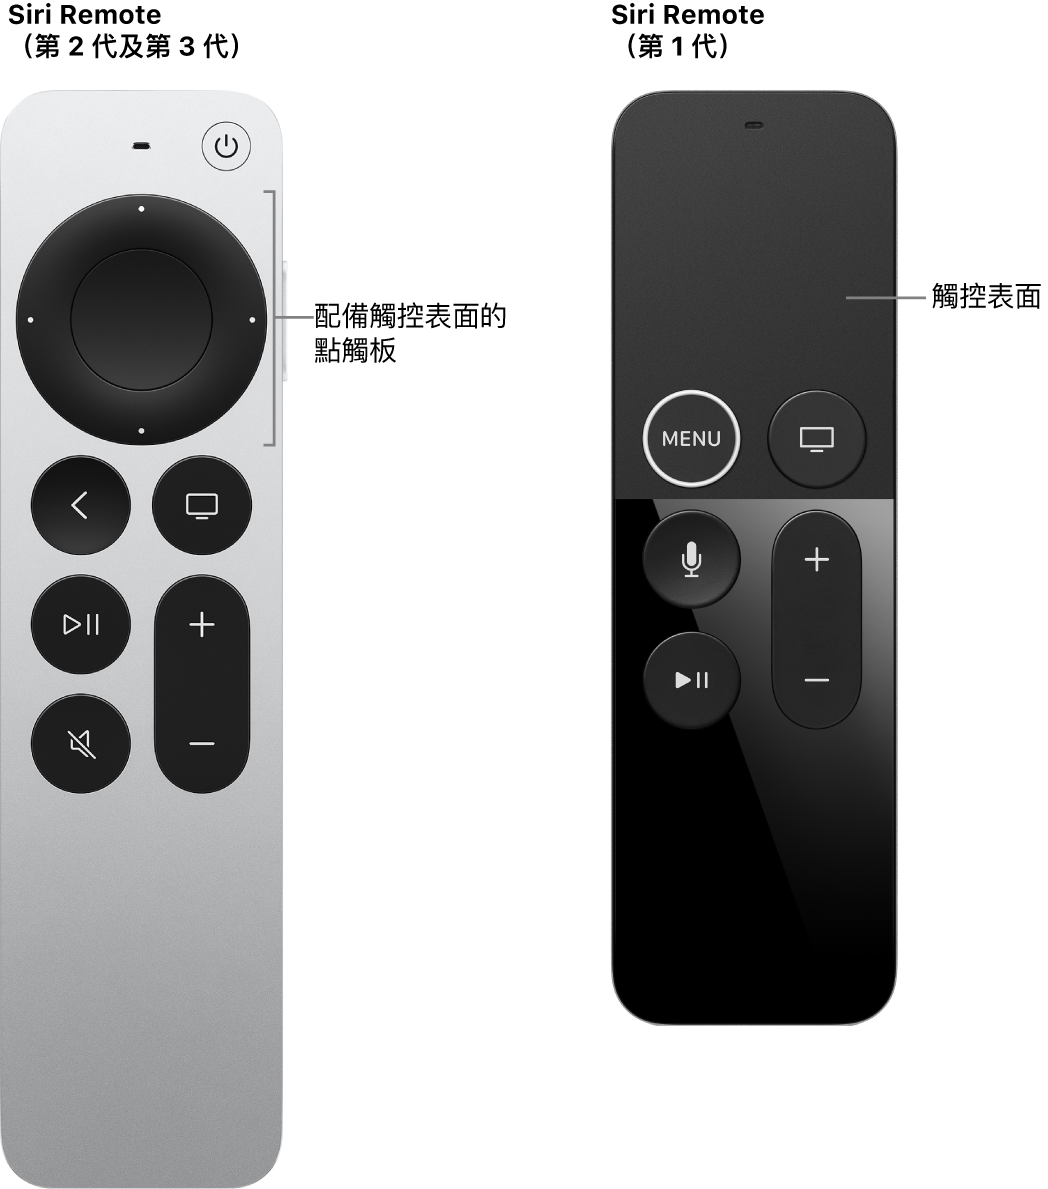 配備點觸板的 Siri Remote（第 2 代及第 3 代）以及配備觸控表面的 Siri Remote（第 1 代）